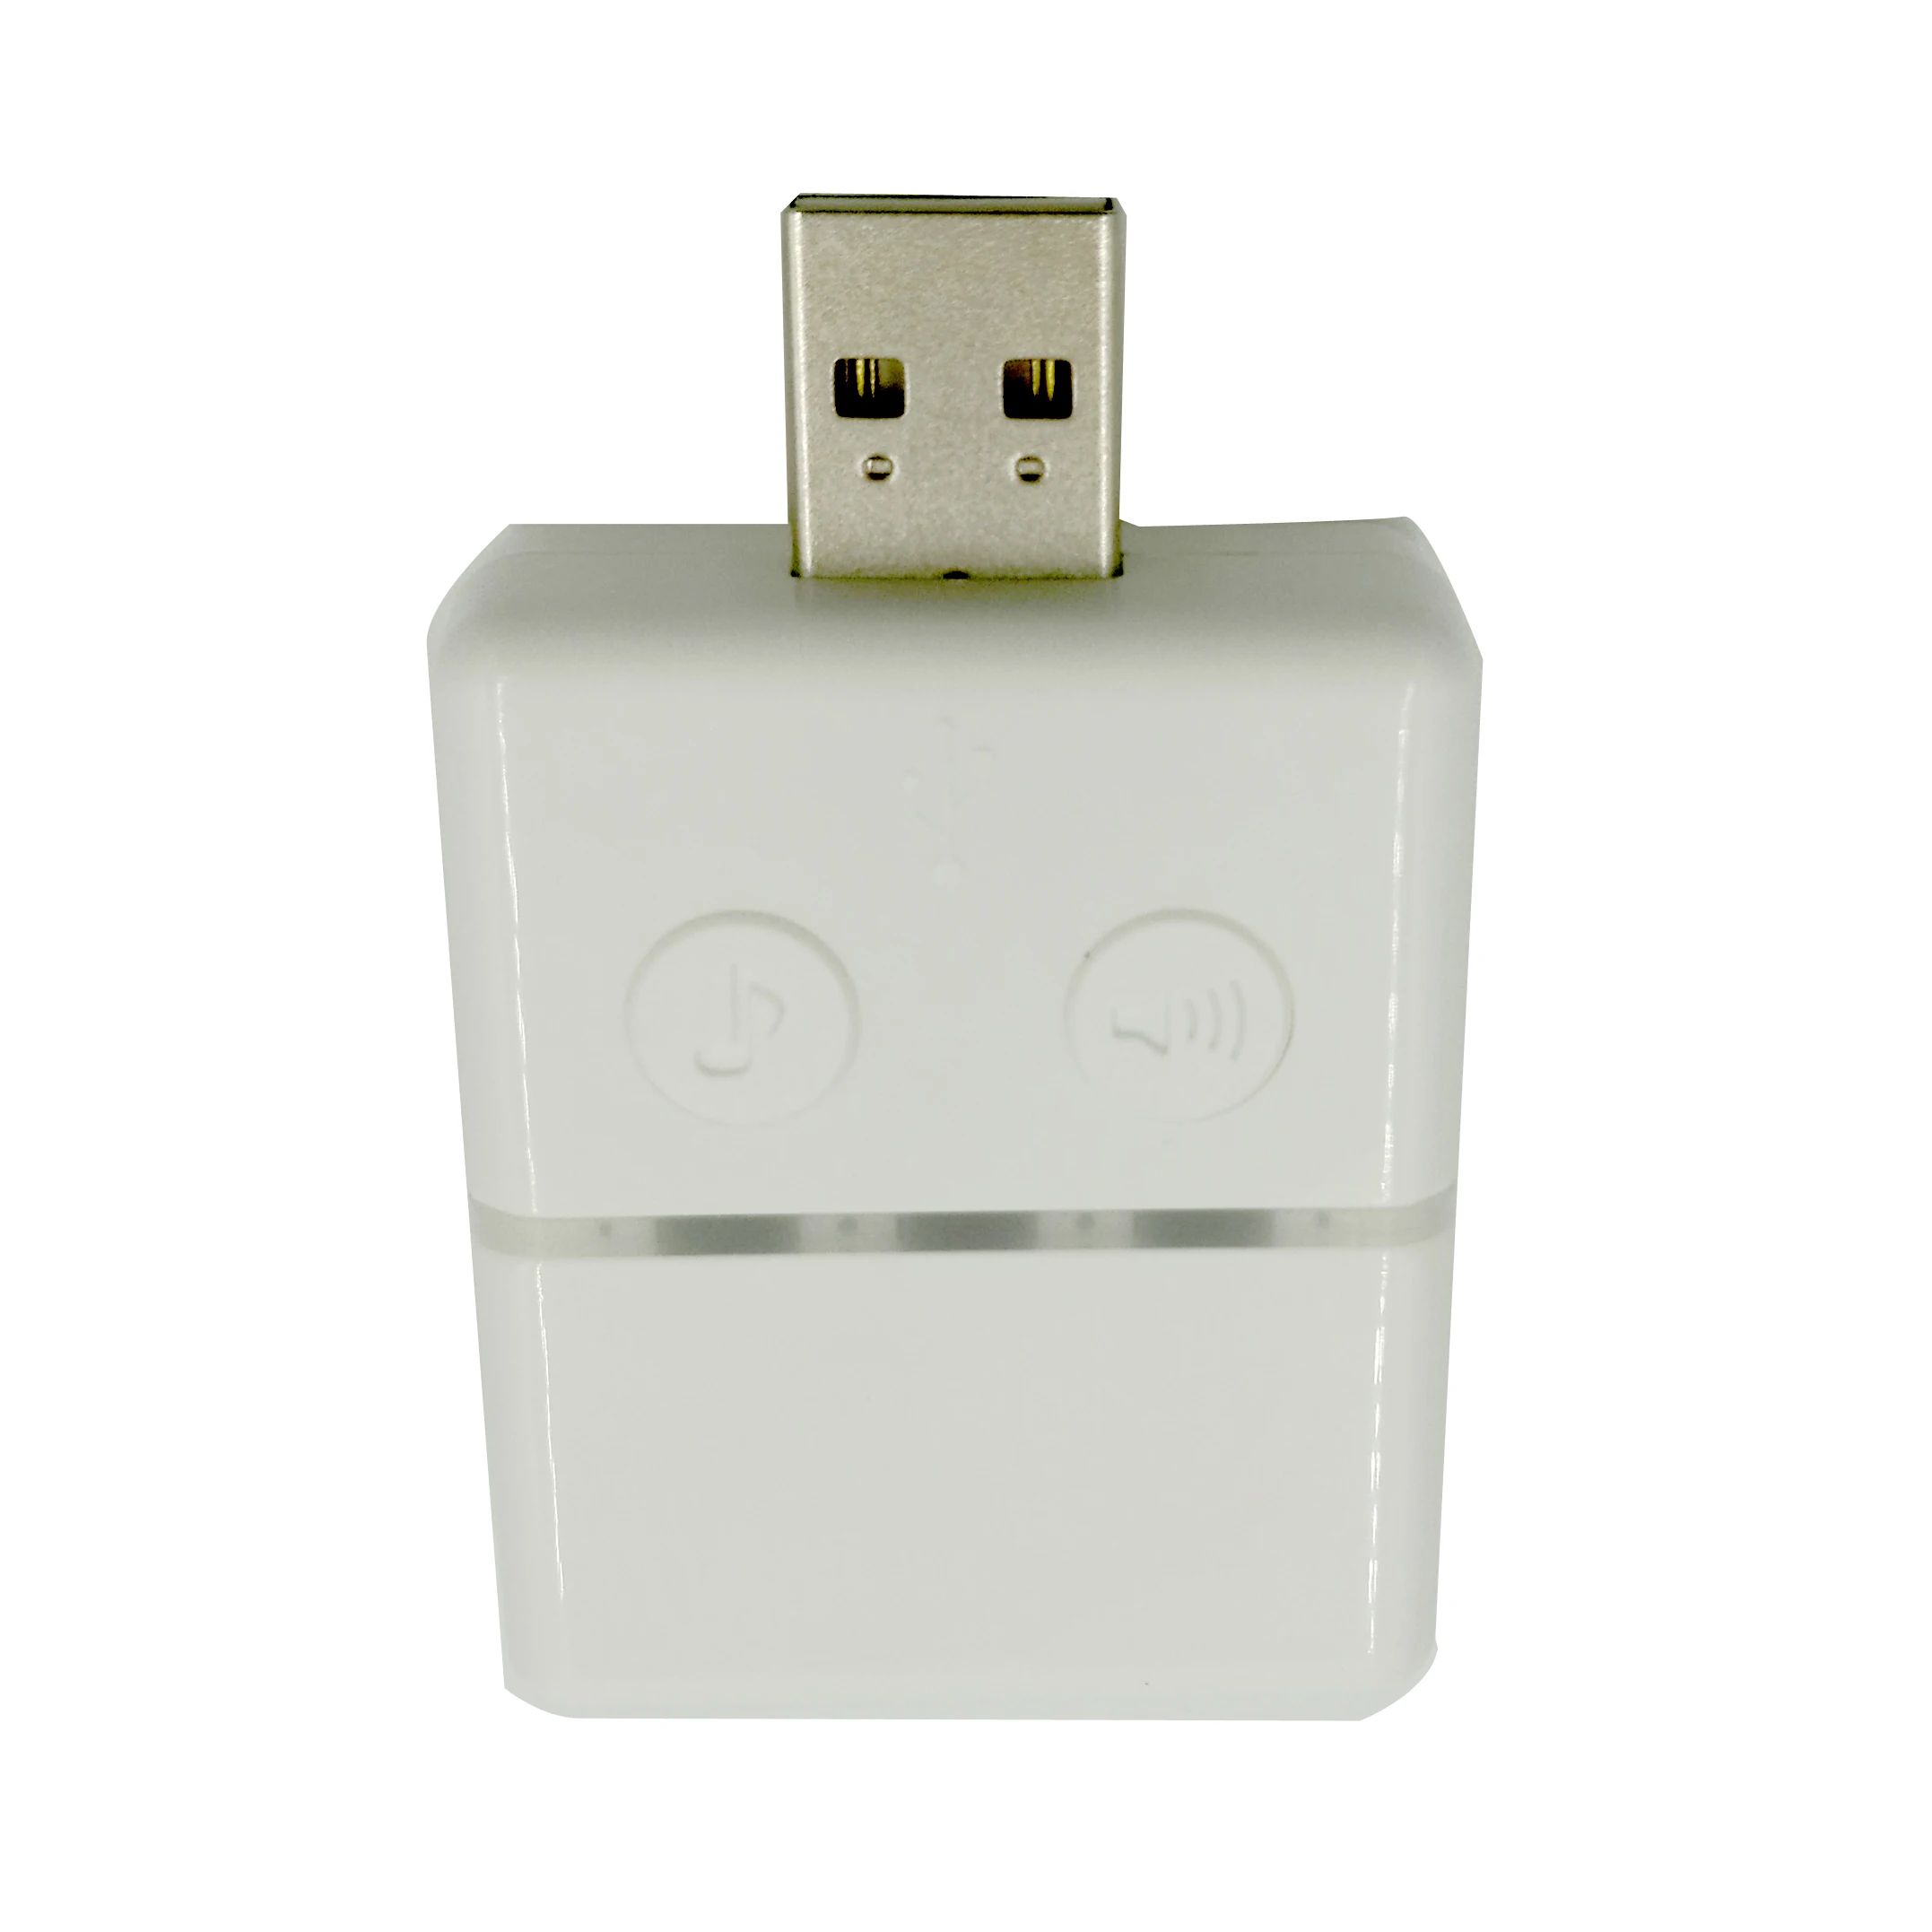 Высокое качество USB музыкальный перезвон дверной звонок для внутреннего использования для KONX умный WiFi 2way аудио дверной звонок умный дом